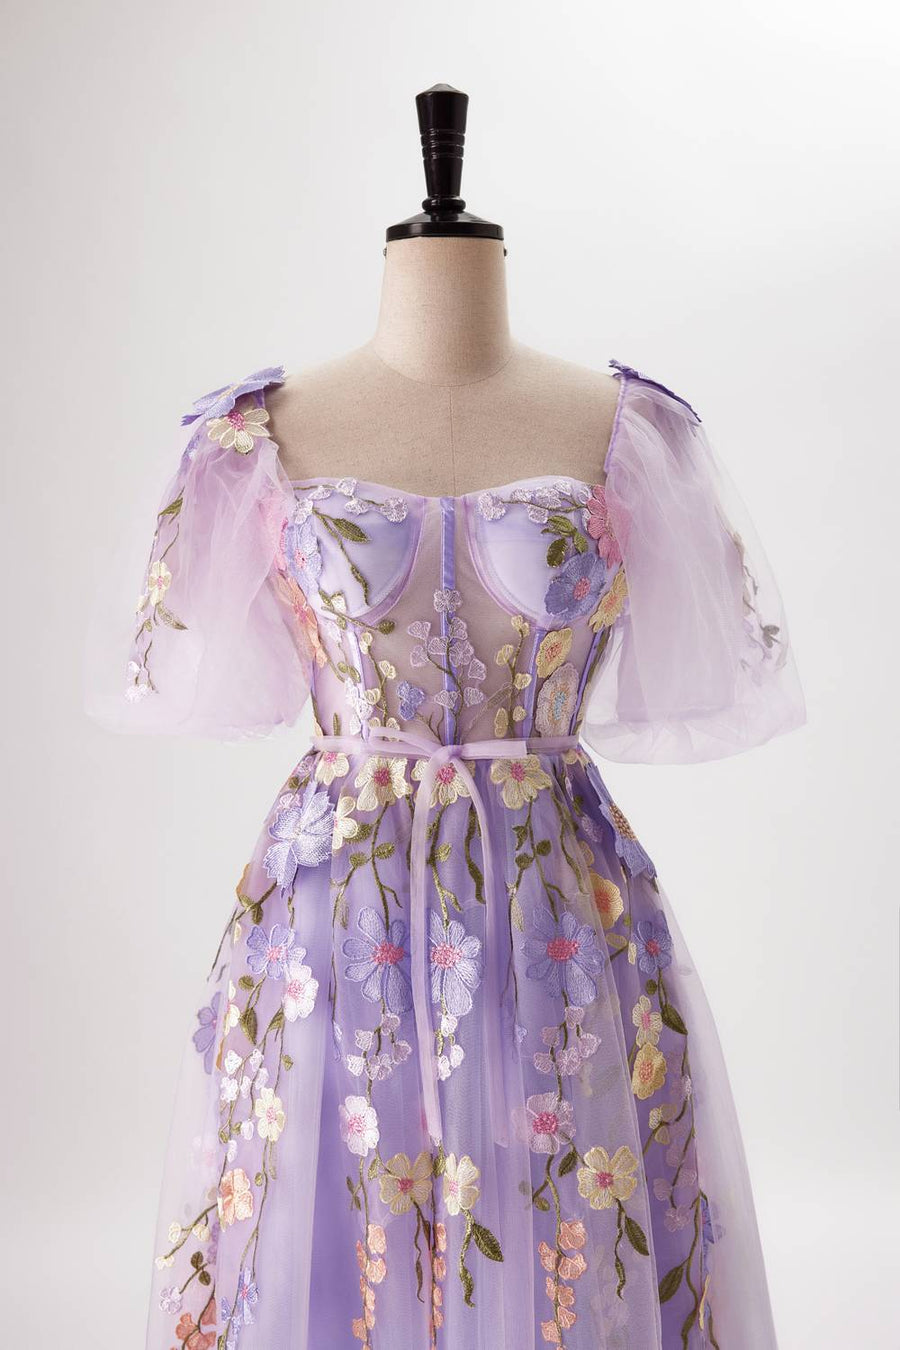 us 4 Lavender Floral Corset A-line Long Dress